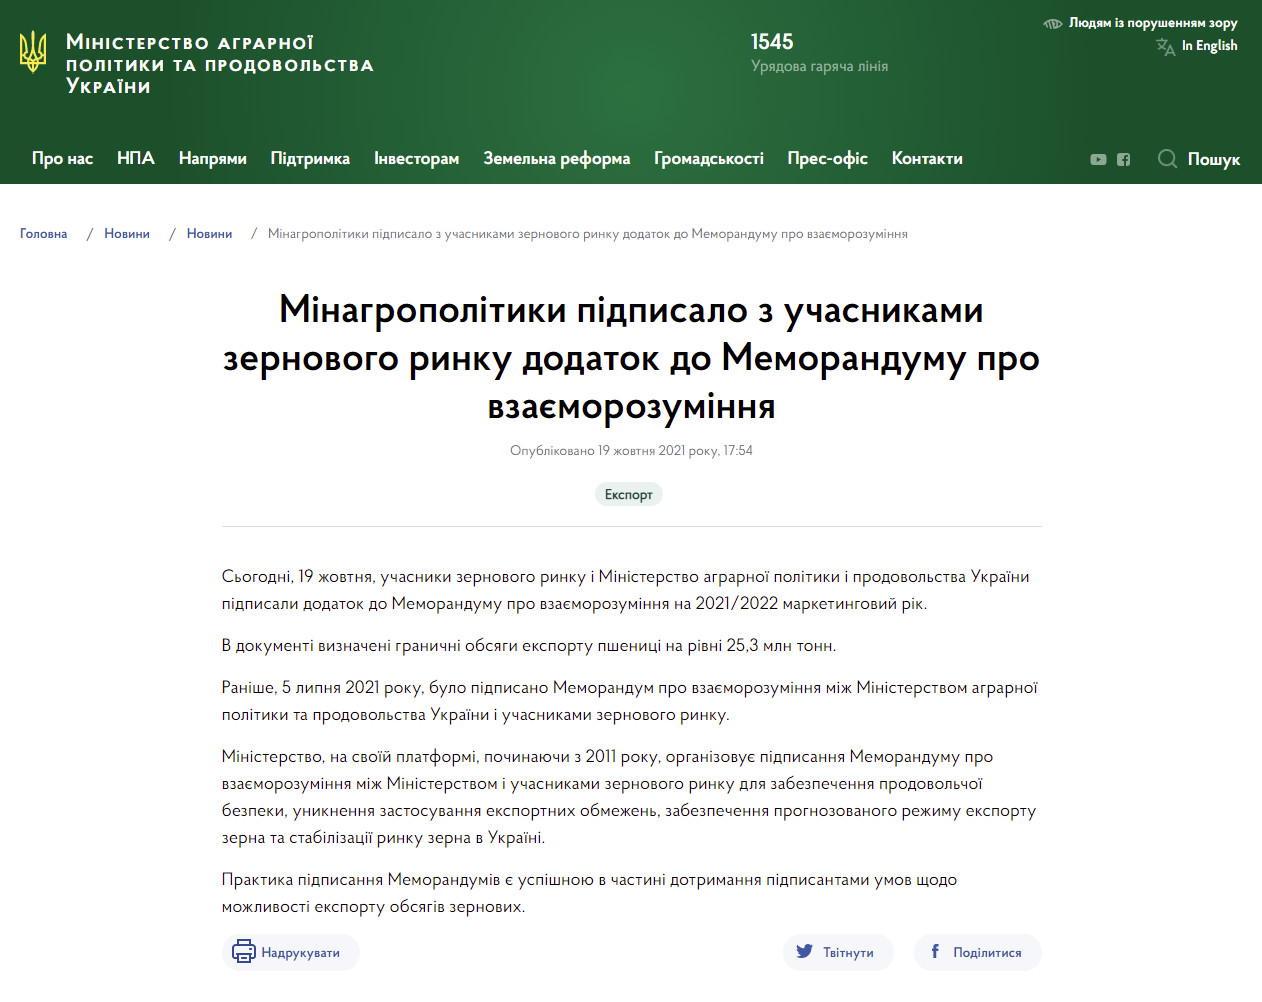 https://minagro.gov.ua/ua/news/minagropolitiki-pidpisalo-z-uchasnikami-zernovogo-rinku-dodatok-do-memorandumu-pro-vzayemorozuminnya-na-20212022-marketingovij-rik